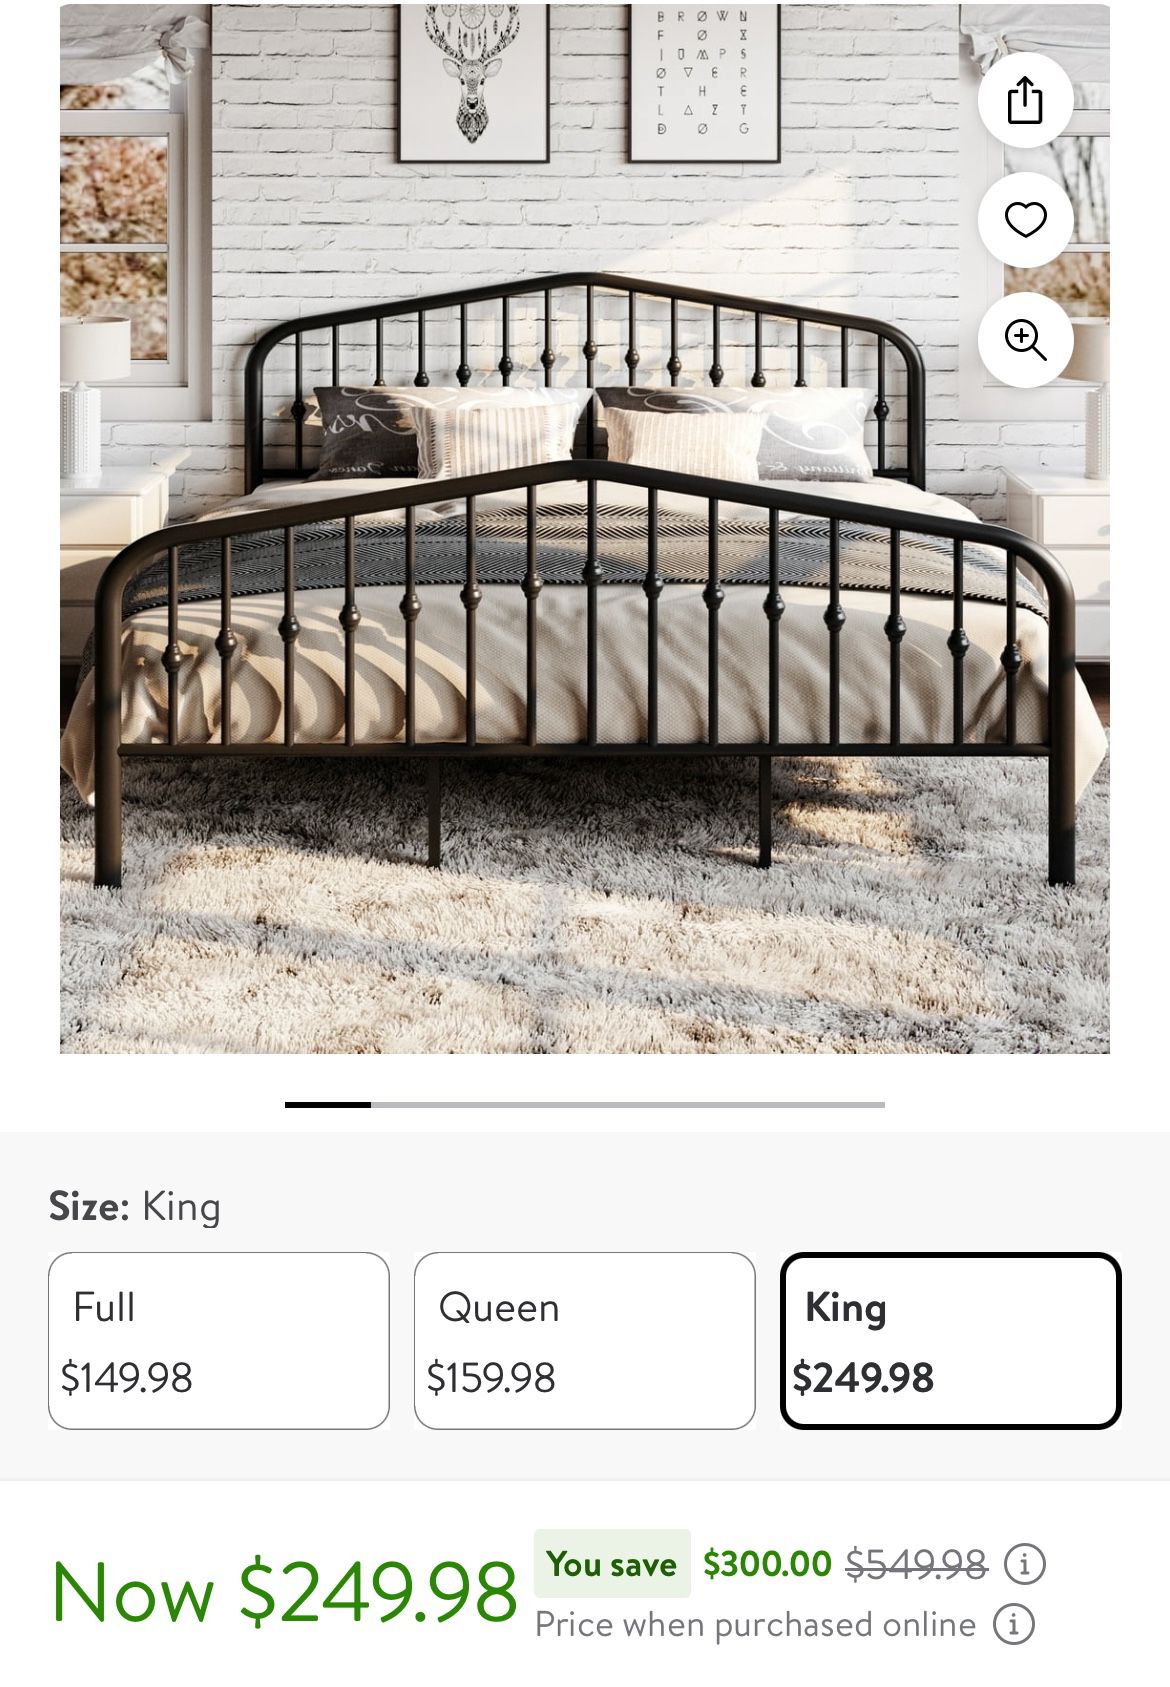 King bed frame